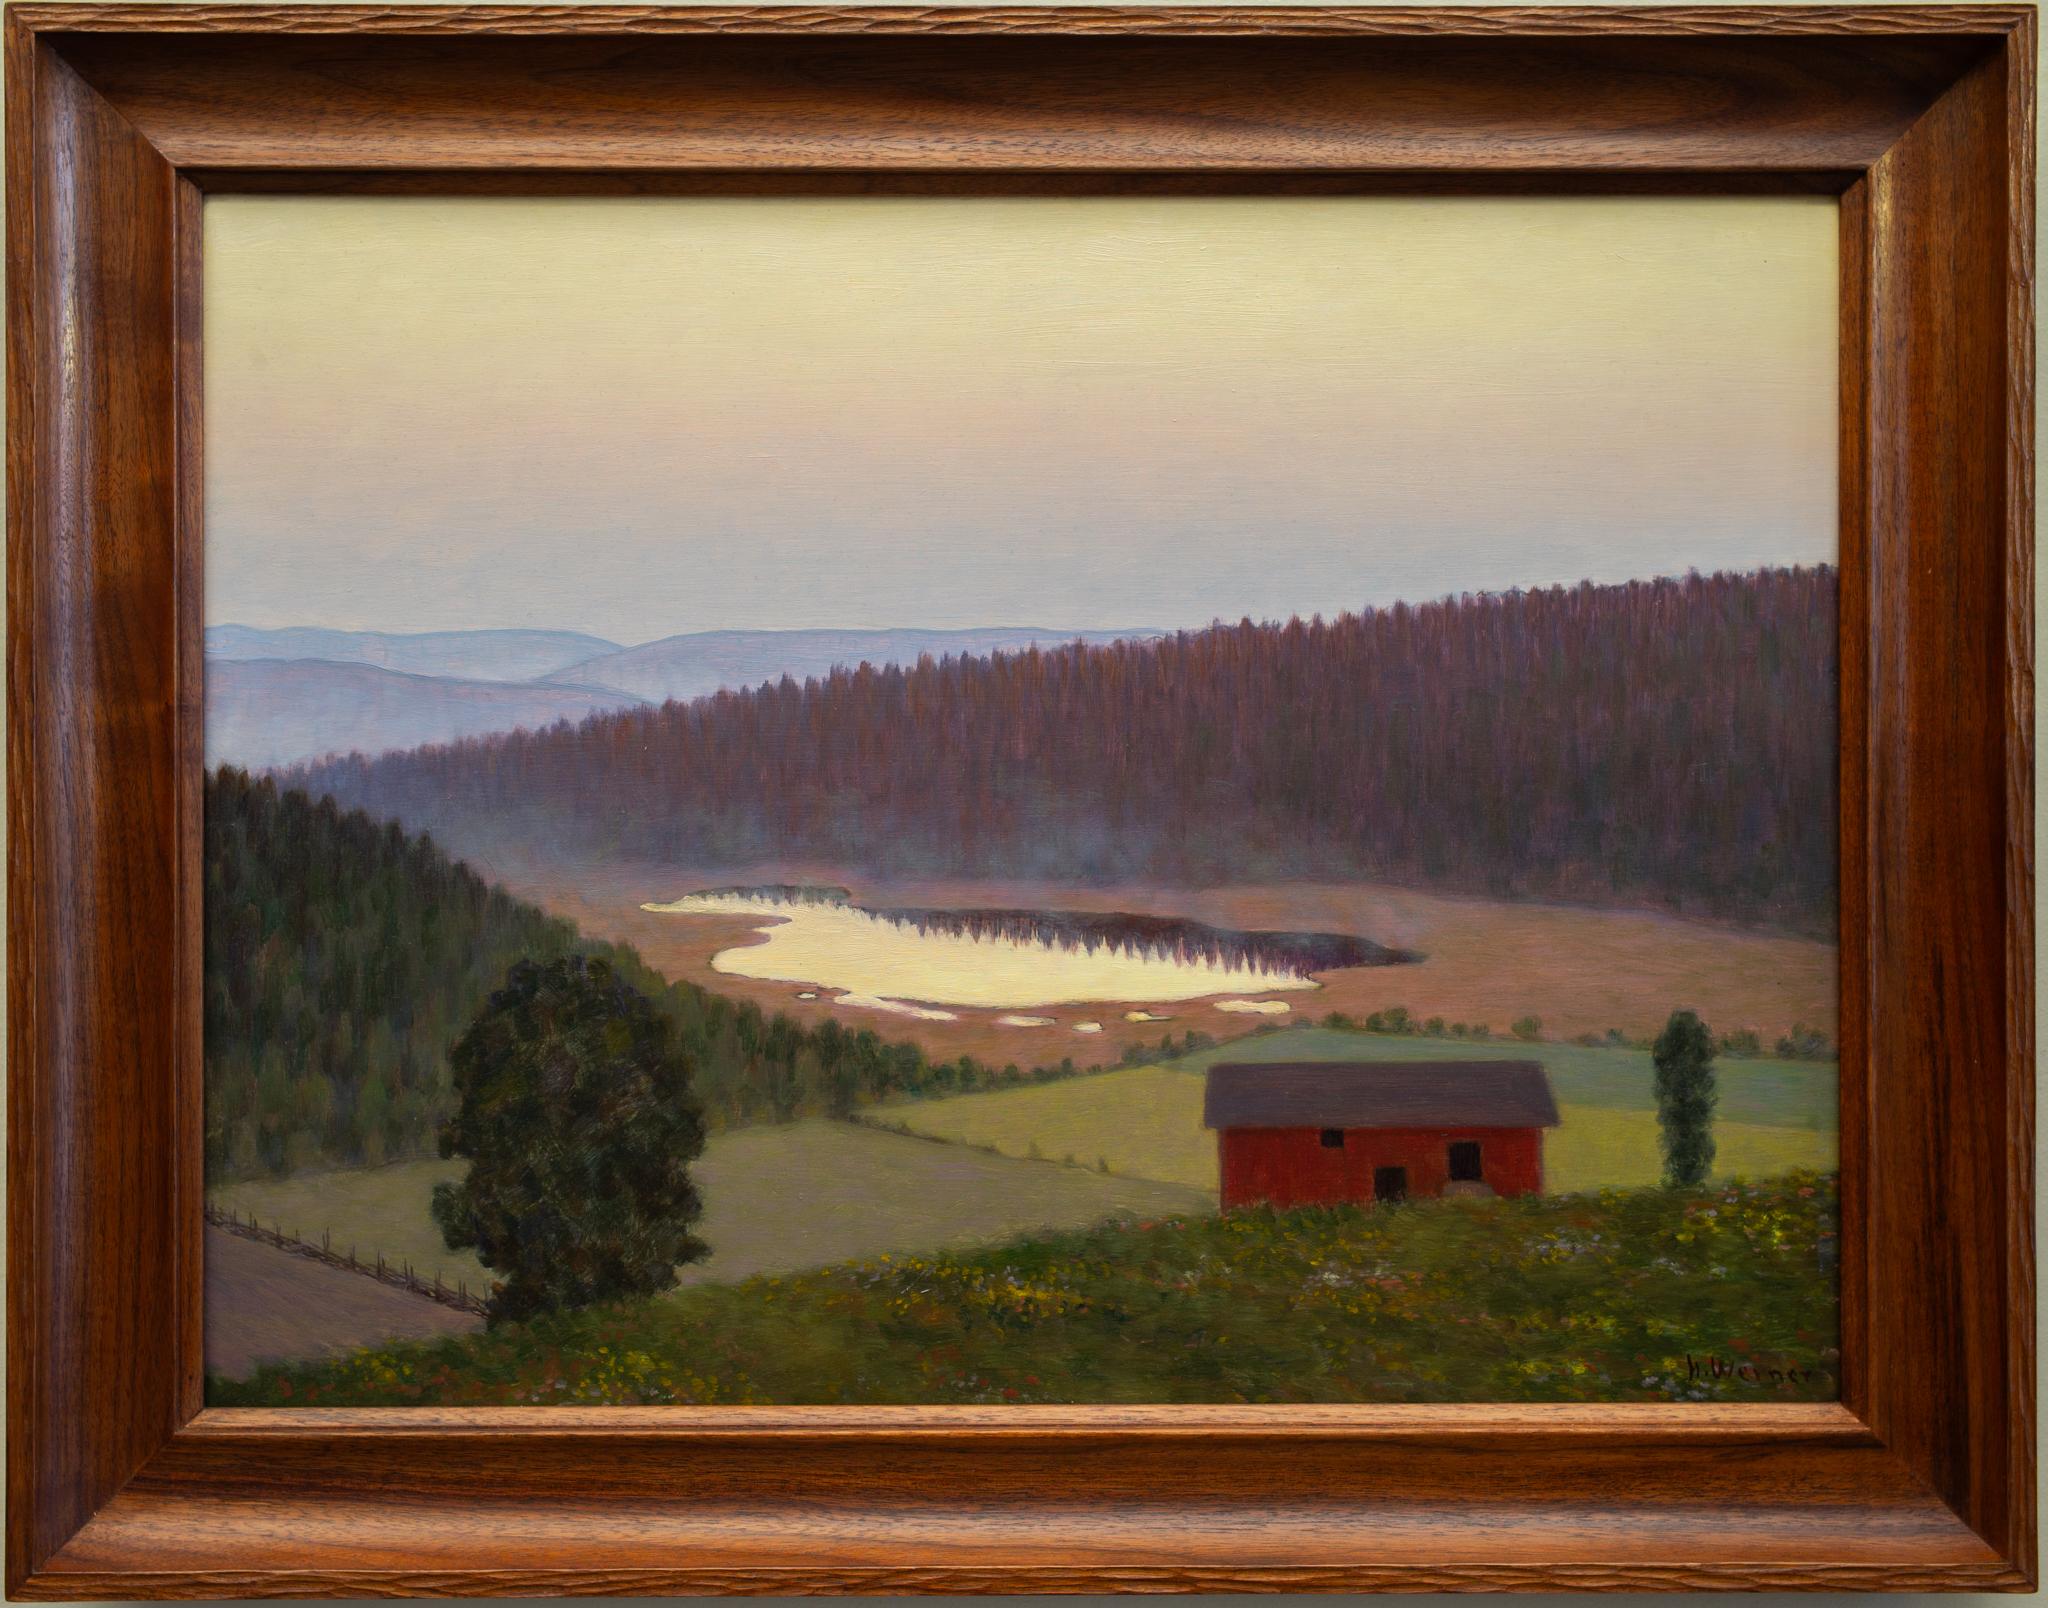 Paysage suédois du Värmland avec une grange rouge par Hilding Werner, peinture à l'huile